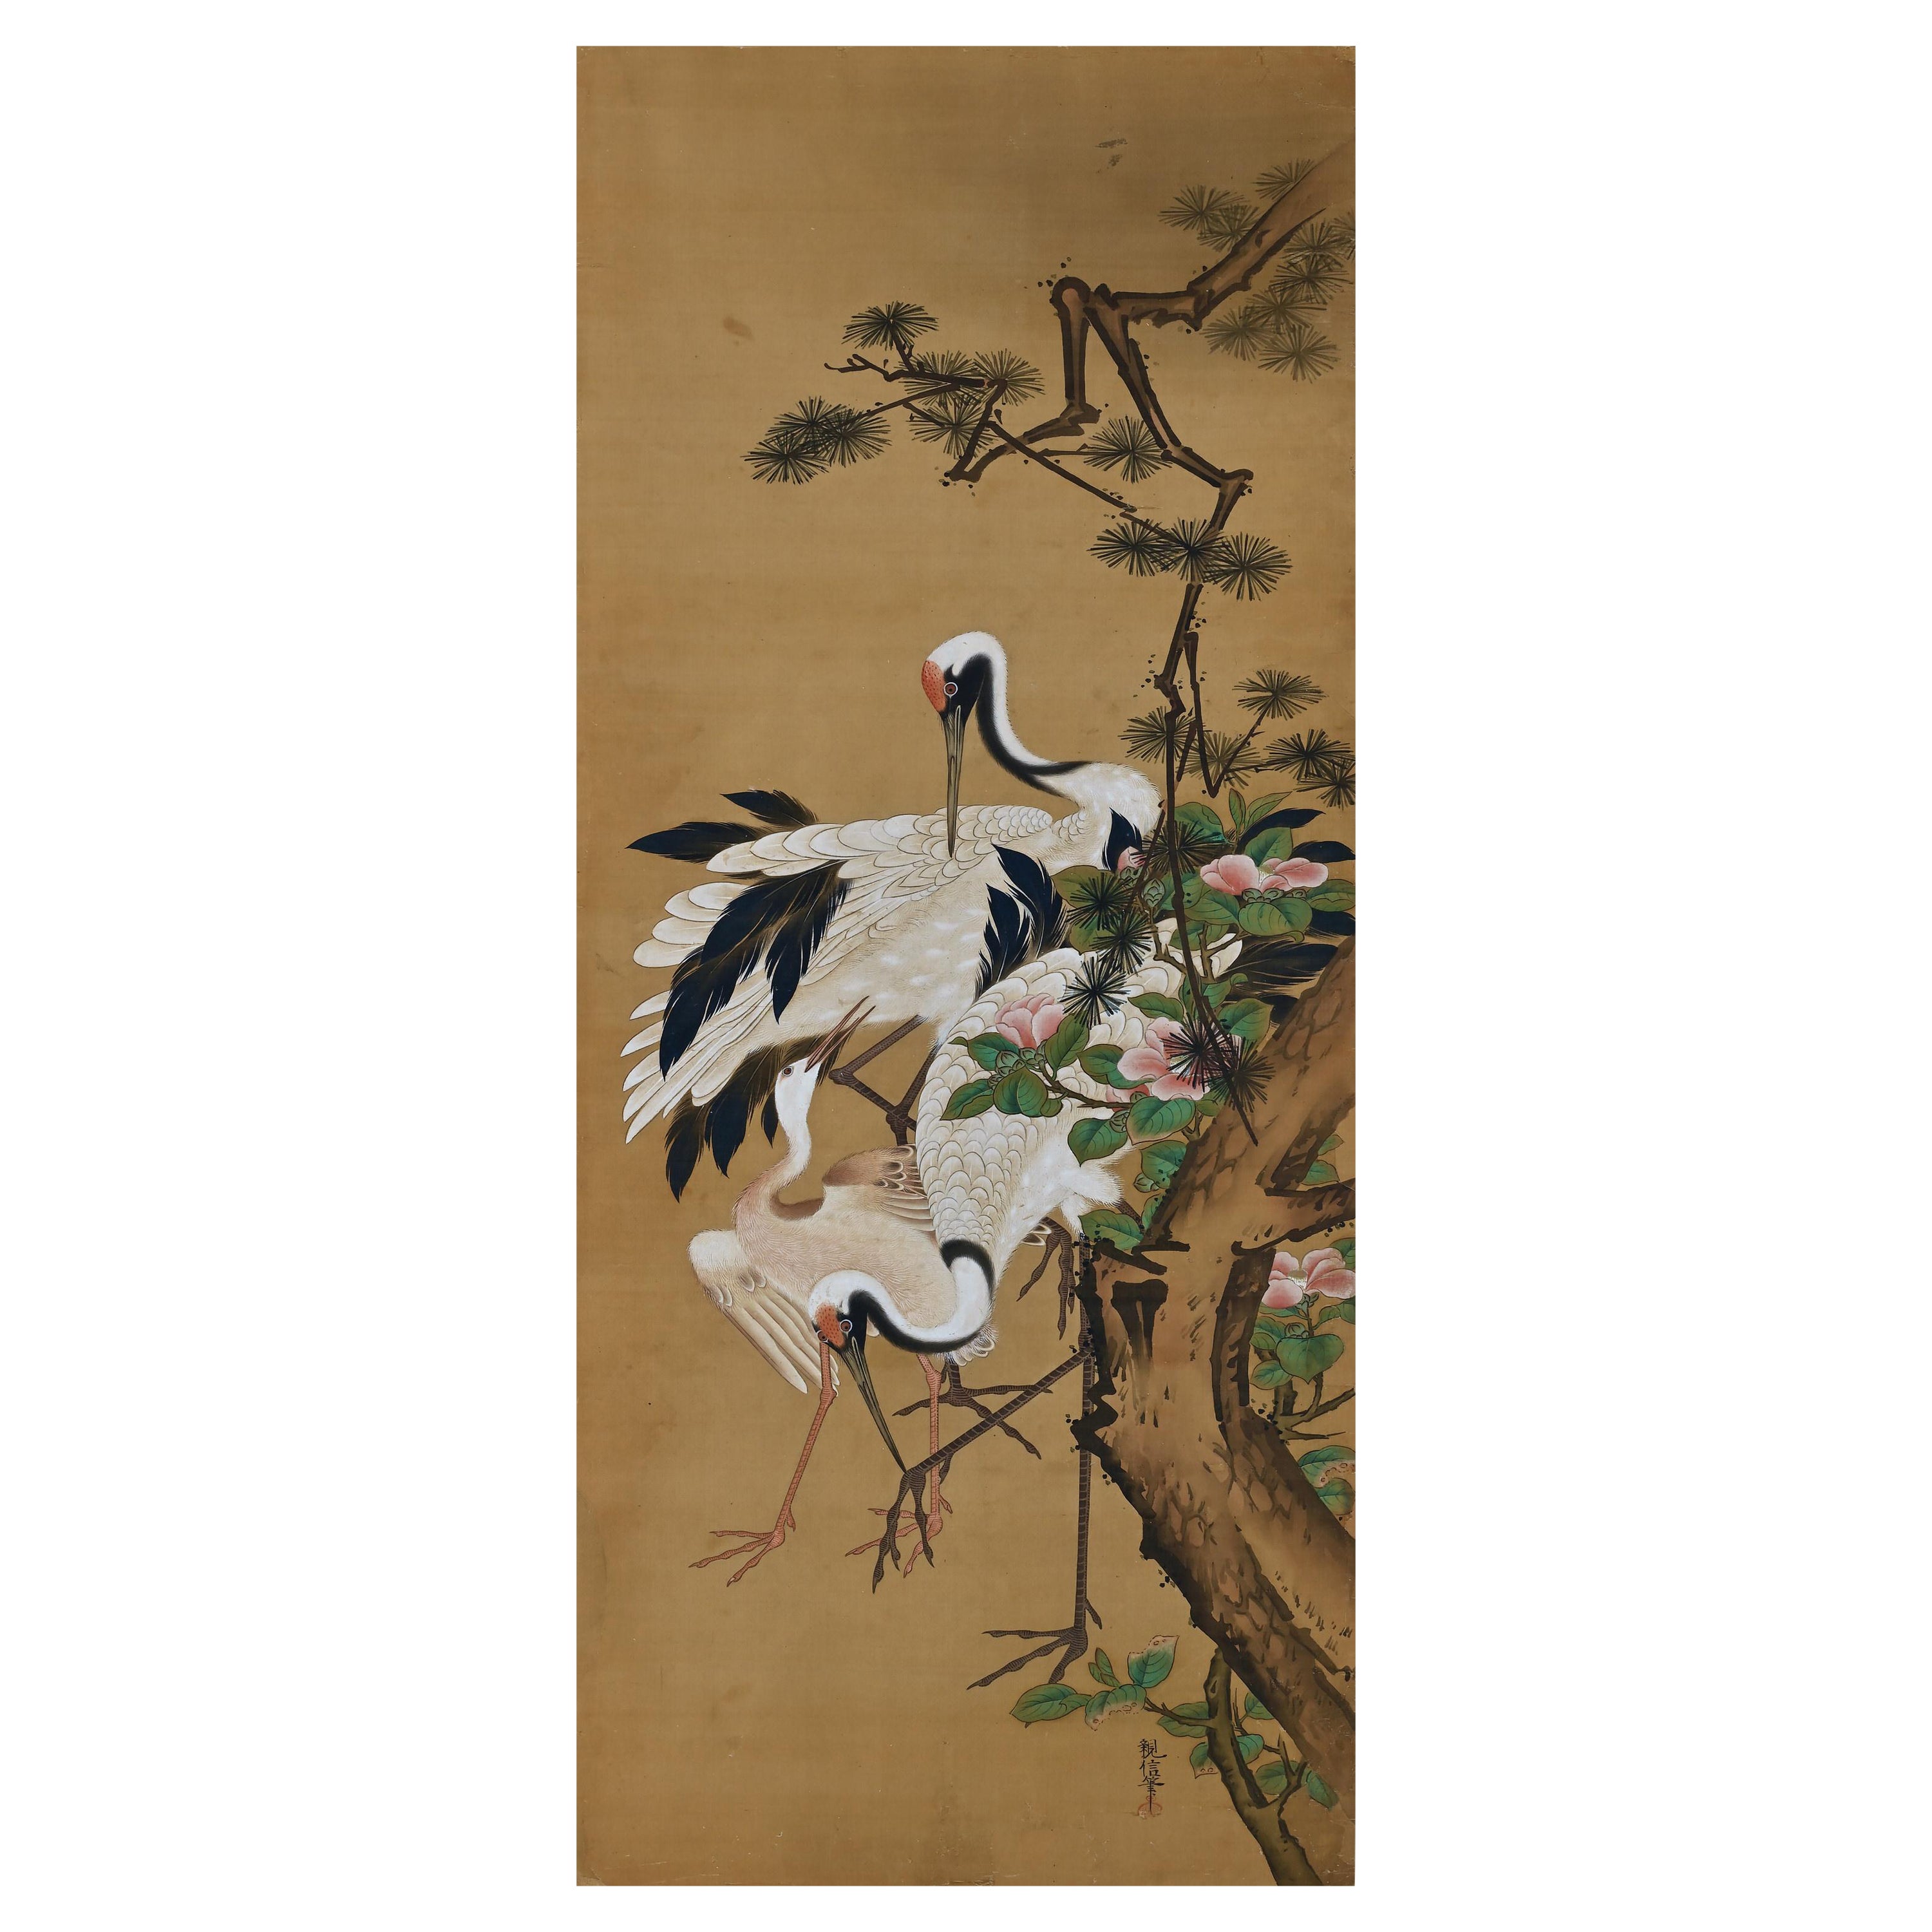 19th Century Japanese Silk Painting by Kano Chikanobu, Crane, Pine & Camelia